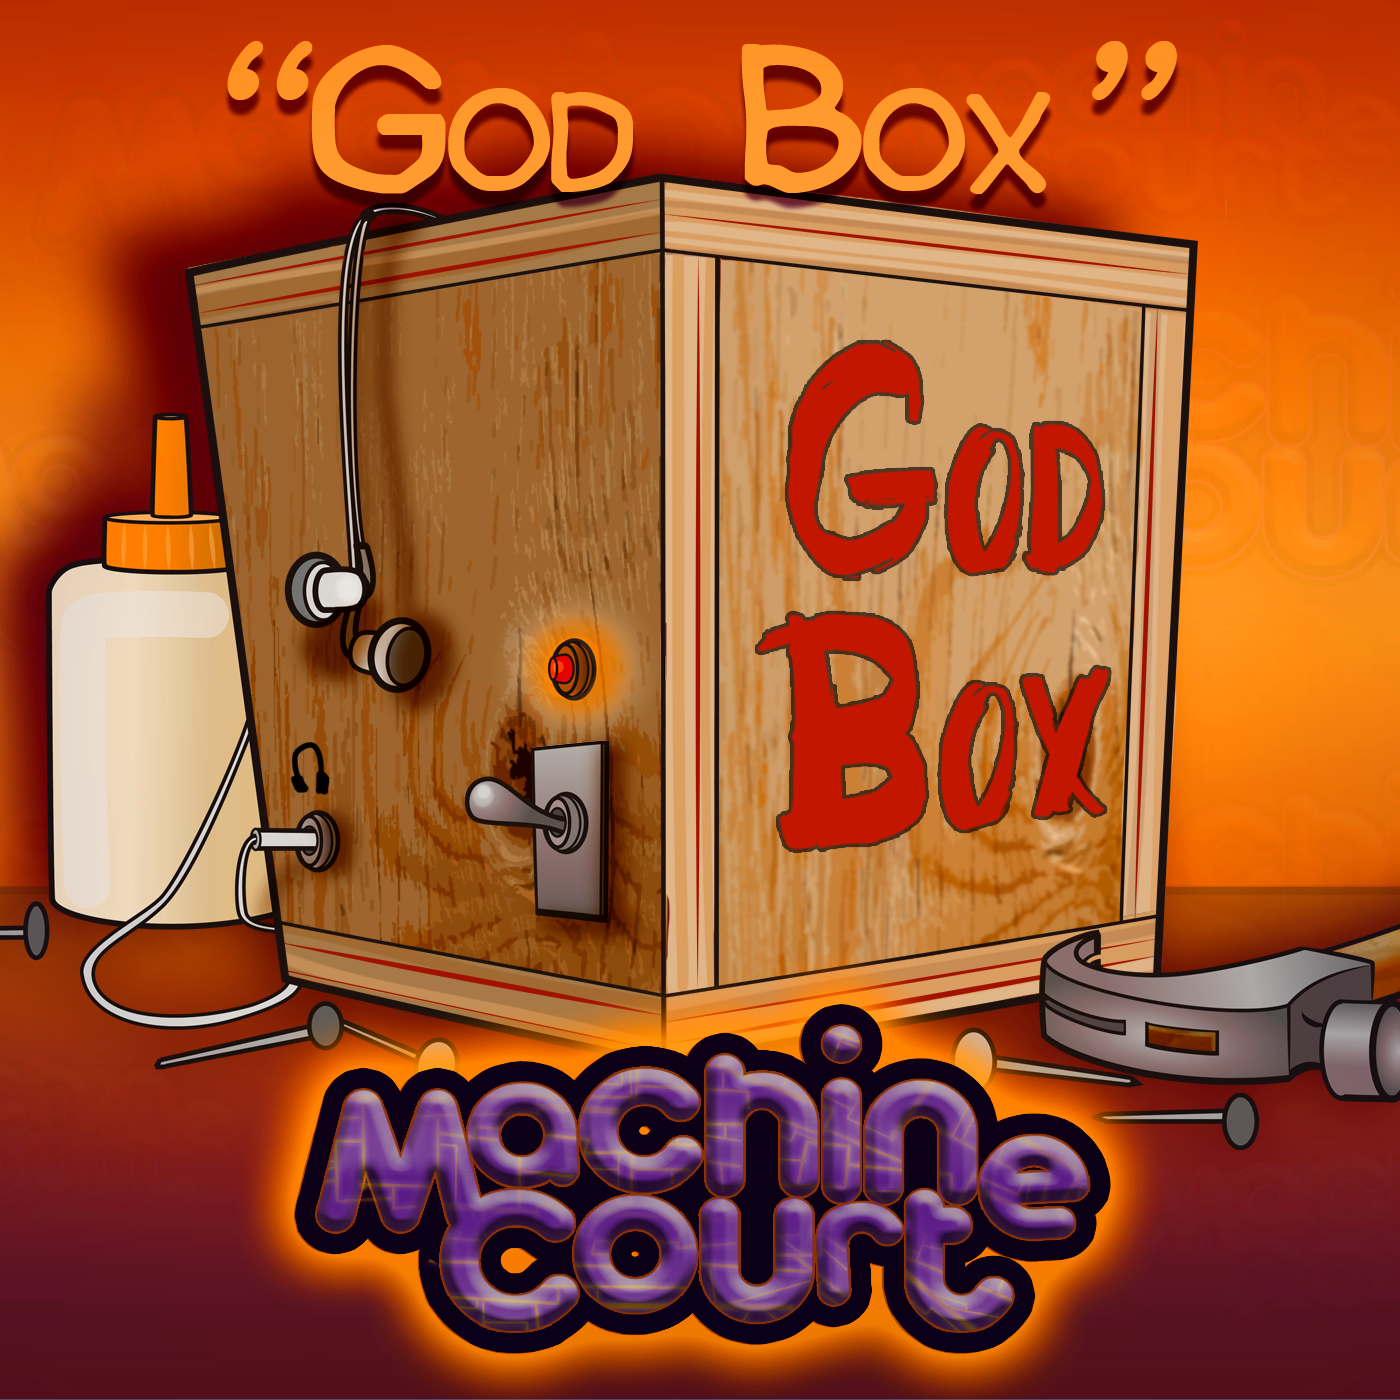 4.03 “God Box”